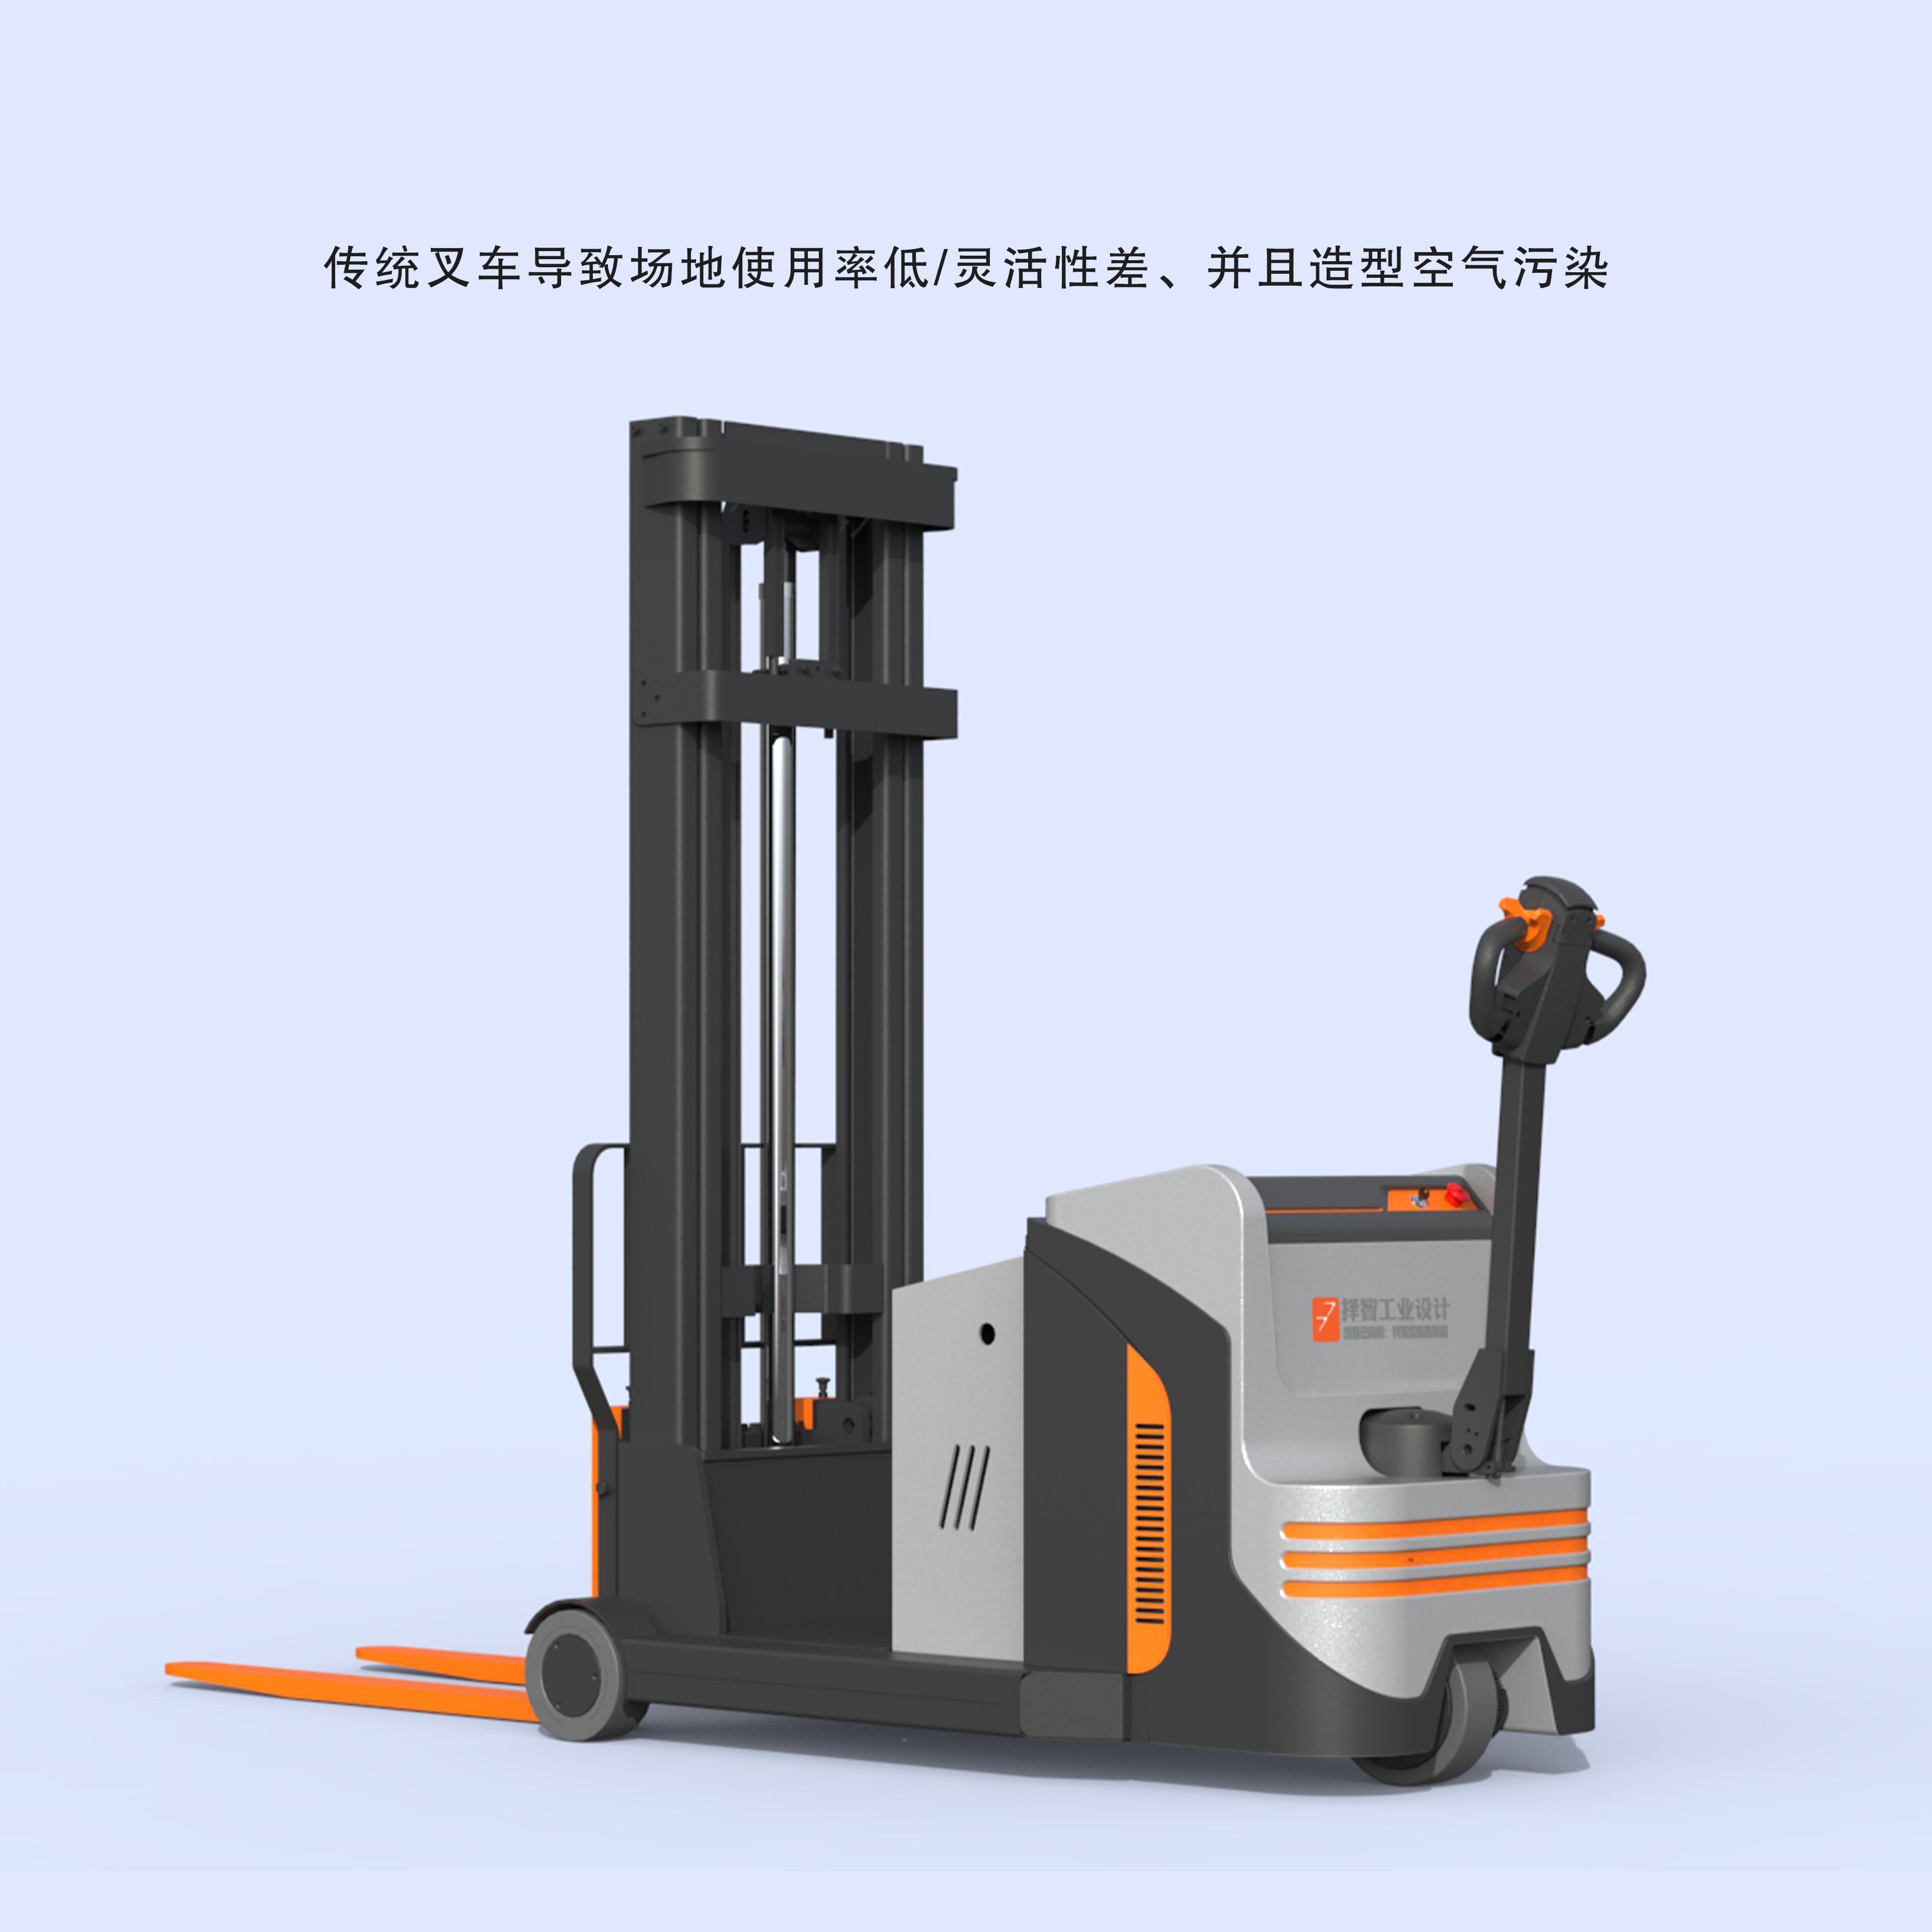 上海苏州产品设计工业产品外观设计结构设计CPD电动叉车